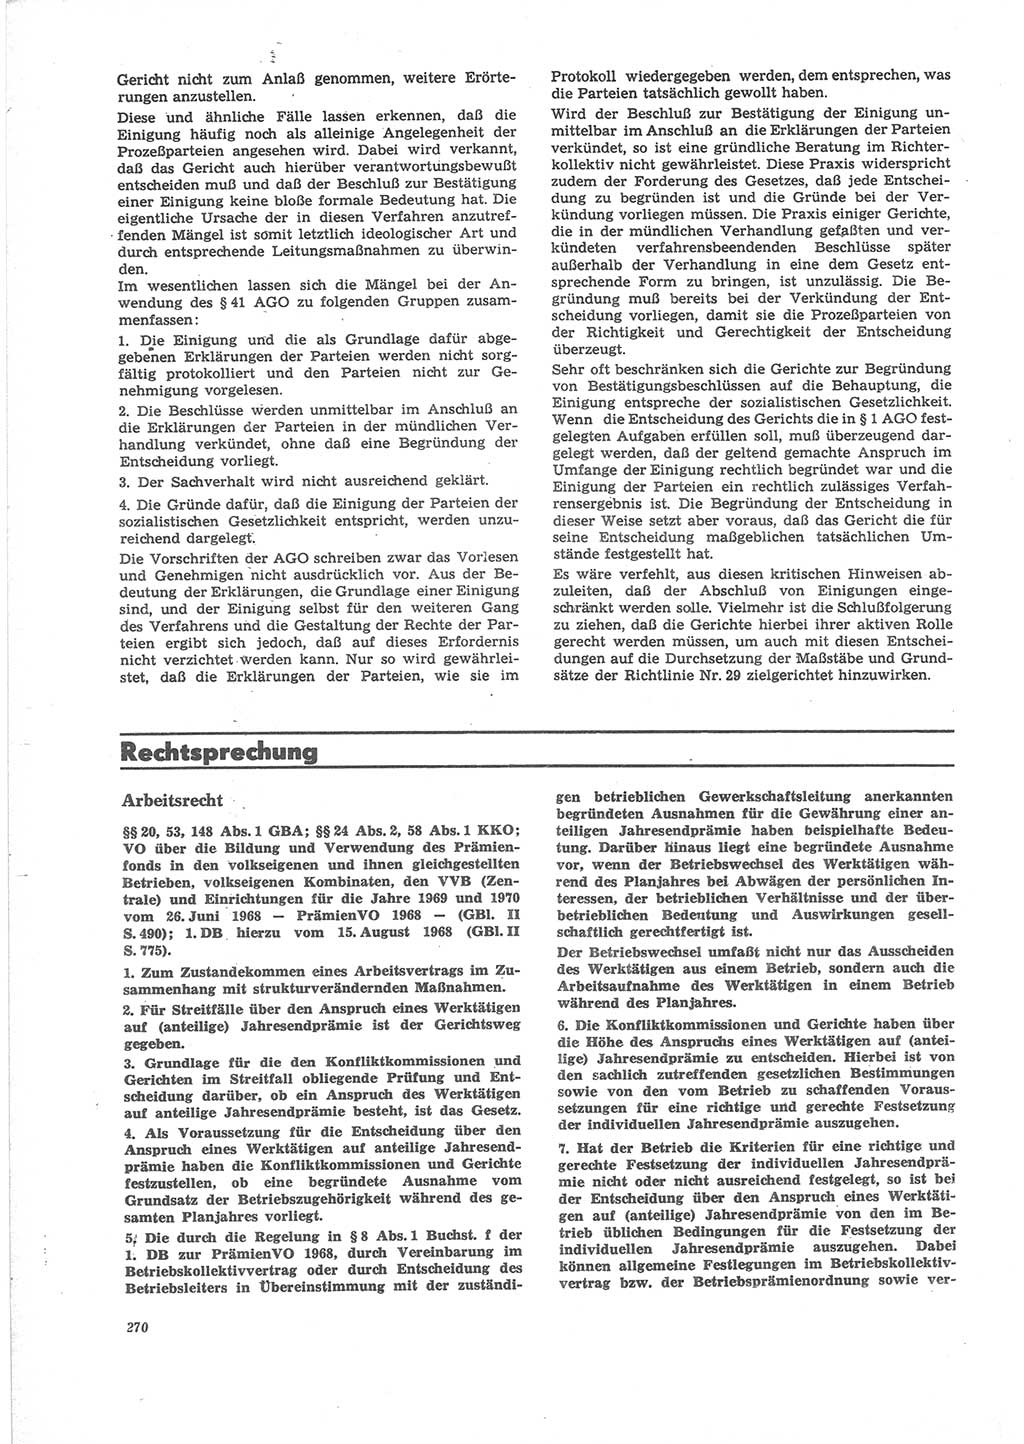 Neue Justiz (NJ), Zeitschrift für Recht und Rechtswissenschaft [Deutsche Demokratische Republik (DDR)], 24. Jahrgang 1970, Seite 270 (NJ DDR 1970, S. 270)